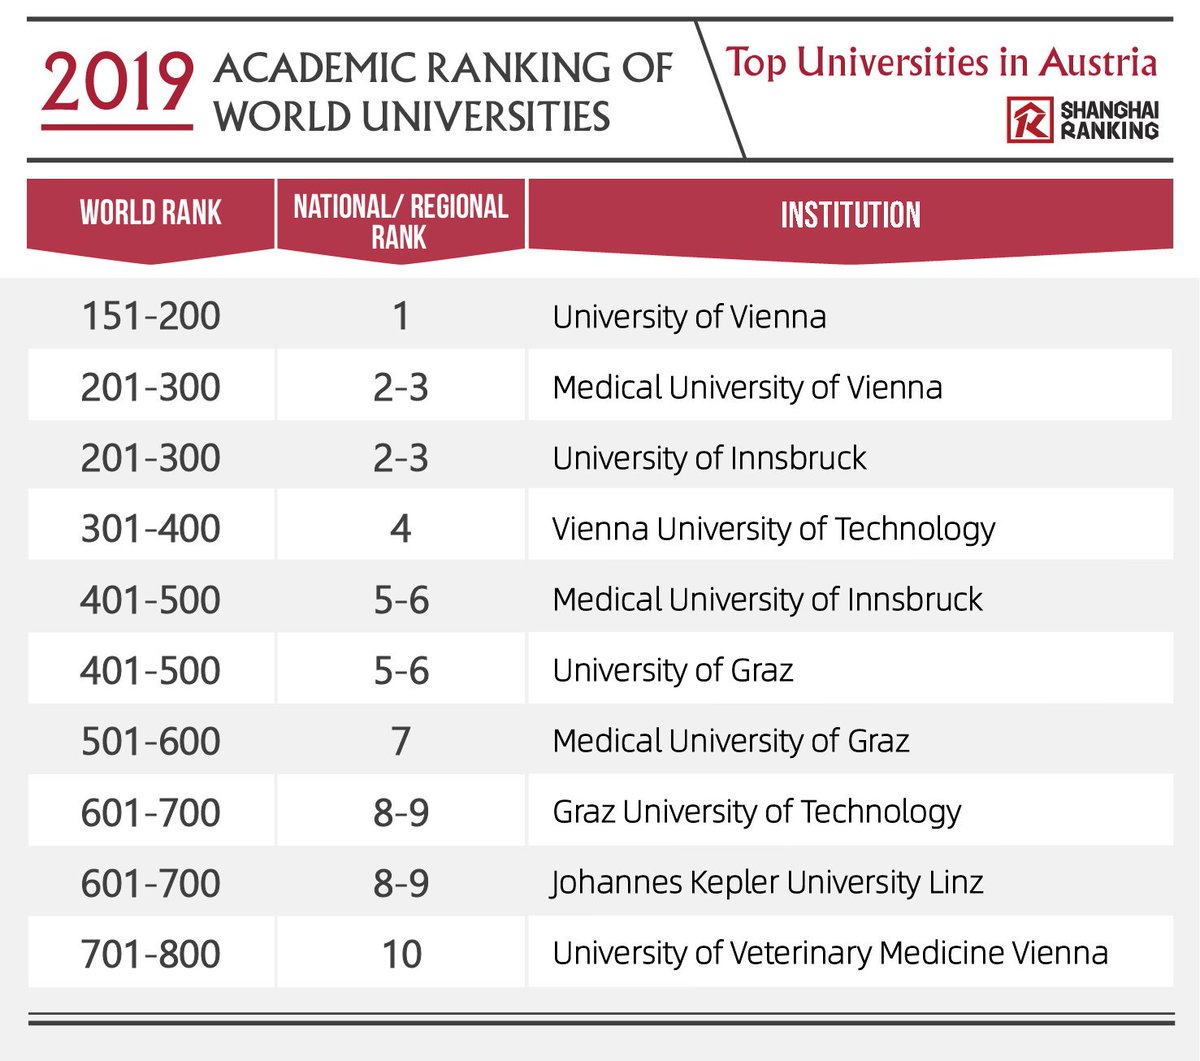 polet pensum maksimum ShanghaiRanking on Twitter: "Top Universities in Austria Academic Ranking  of World Universities 2019! @univienna @imed_tweets @MedUni_Wien @UniGraz  @jkulinz https://t.co/W6YU39eNL2" / Twitter